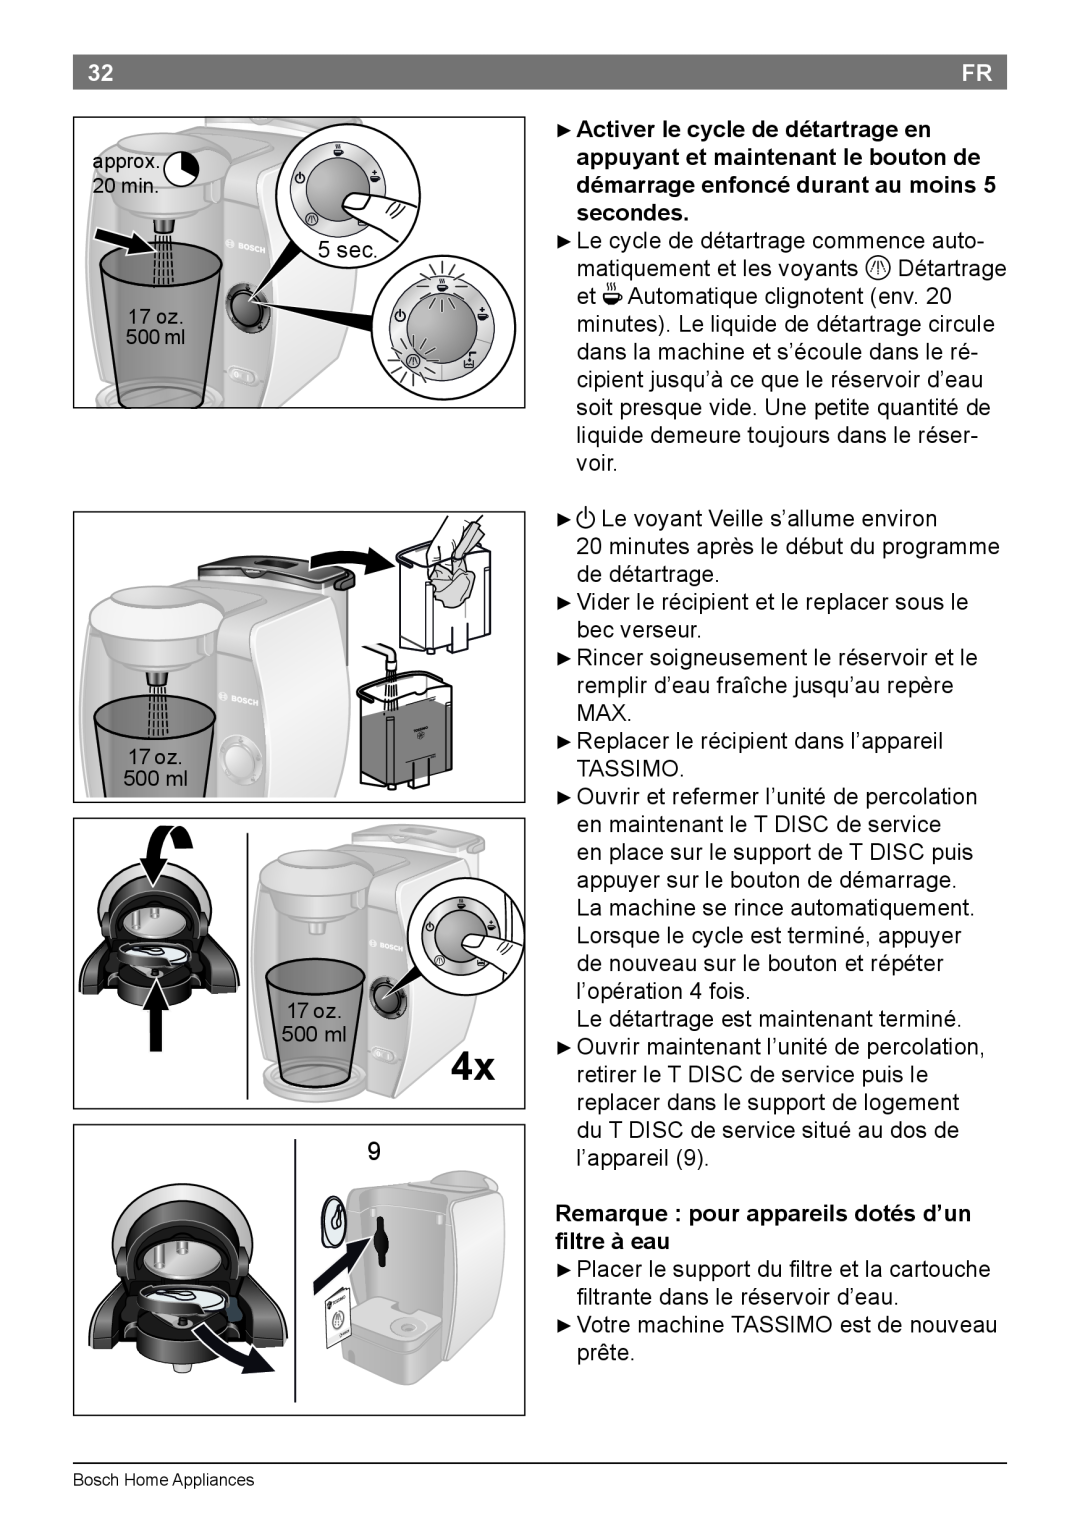 Bosch Appliances T45 instruction manual Remarque pour appareils dotés d’un filtre à eau 